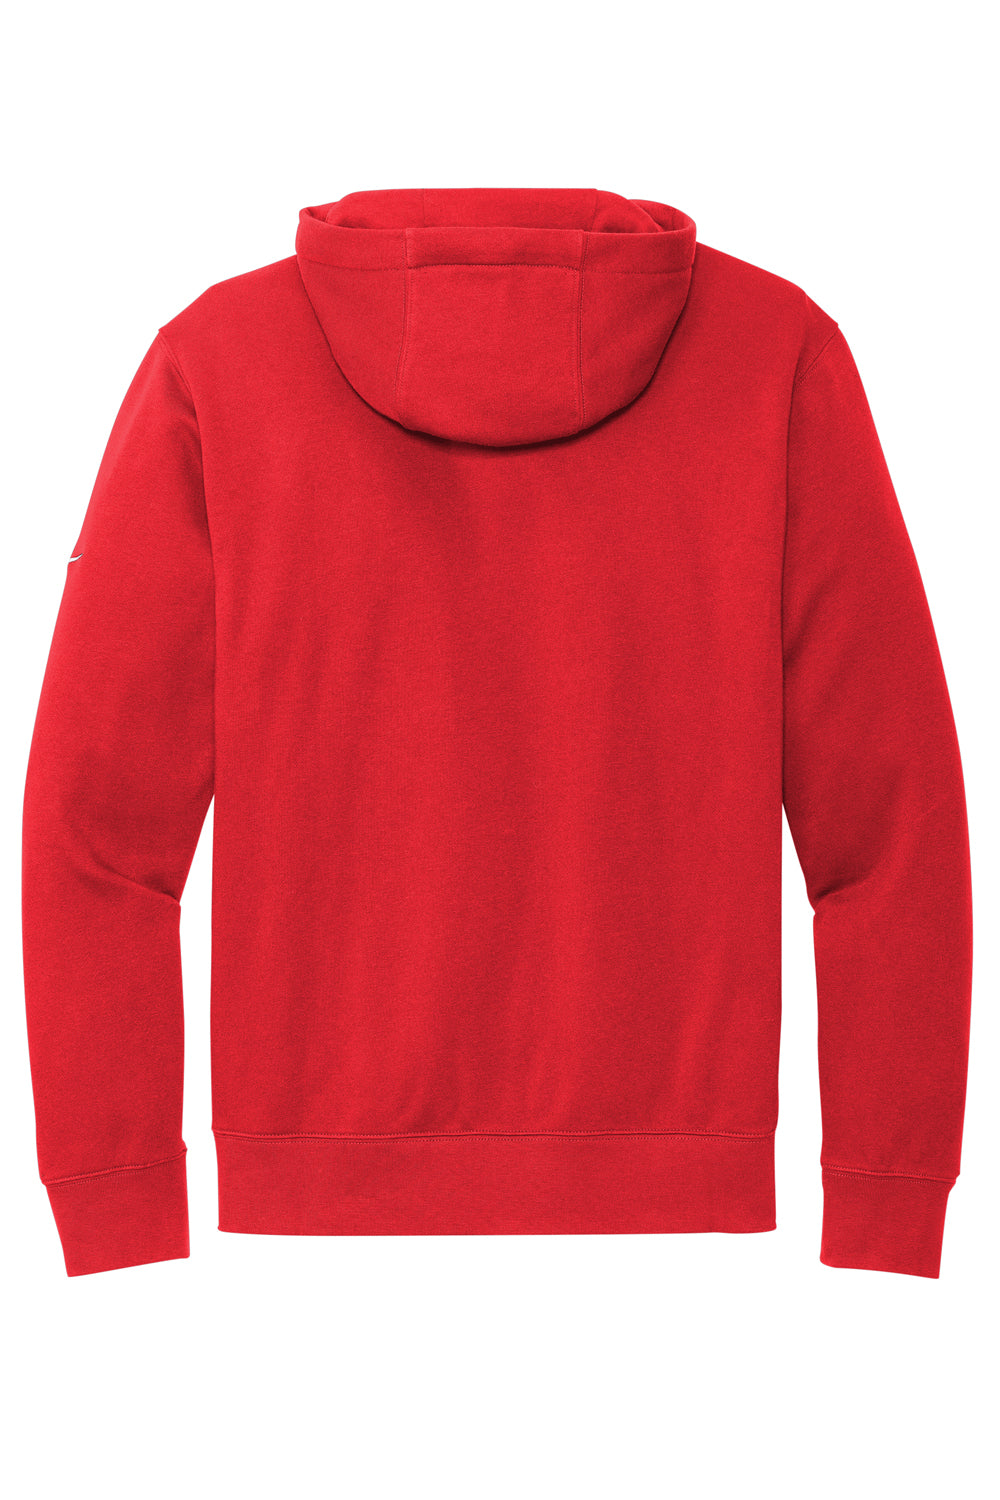 Nike NKDR1499 Mens Club Fleece Hooded Sweatshirt Hoodie University Red Flat Back